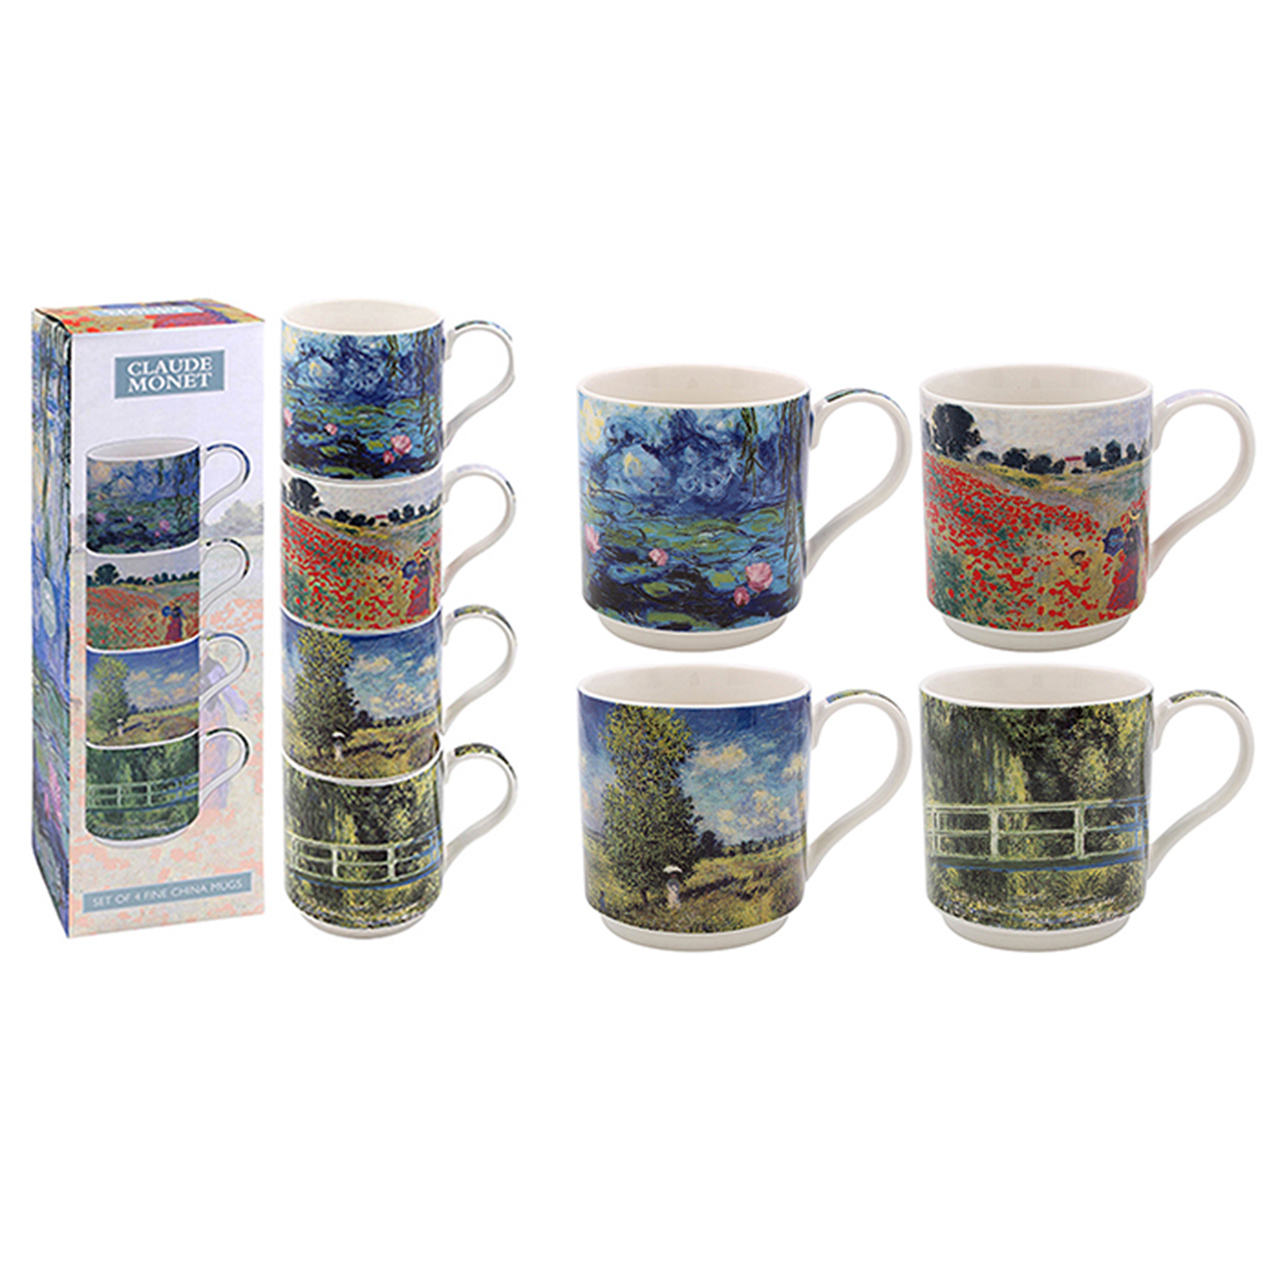 Monet Stacking Mugs